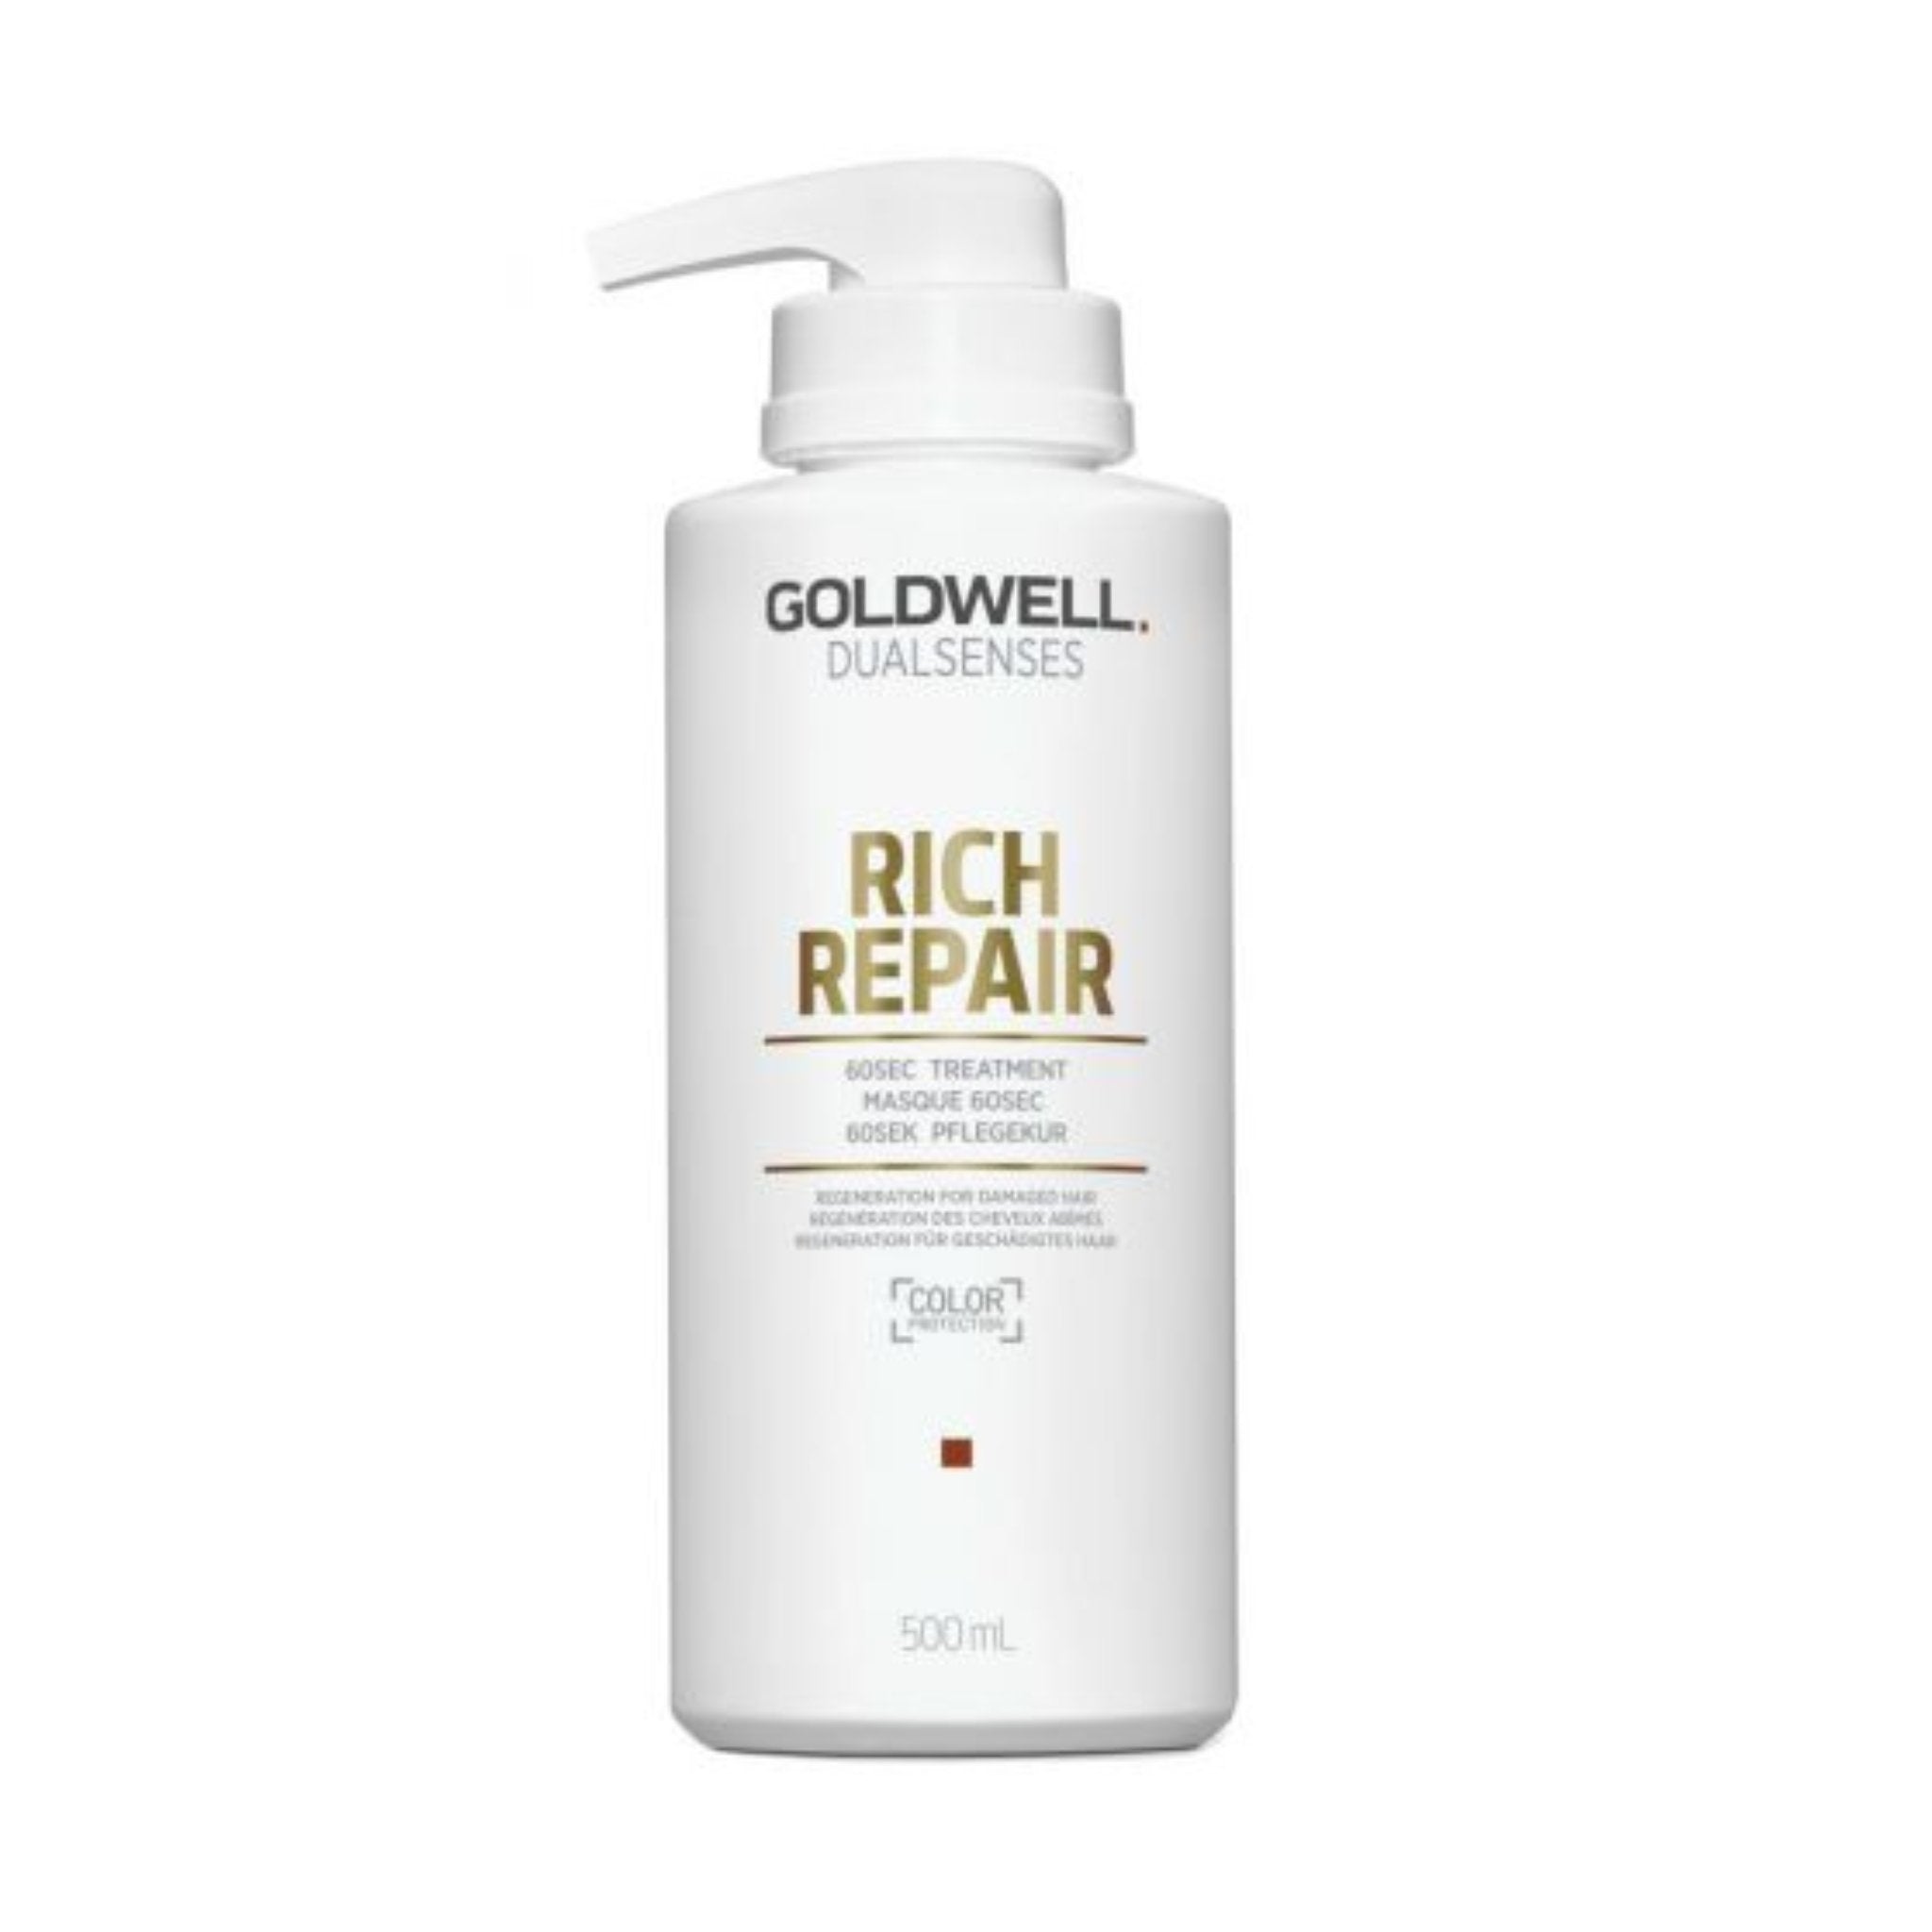 Goldwell. Dual Senses Traitement 60 secondes Rich Repair - 500 ml - Concept C. Shop